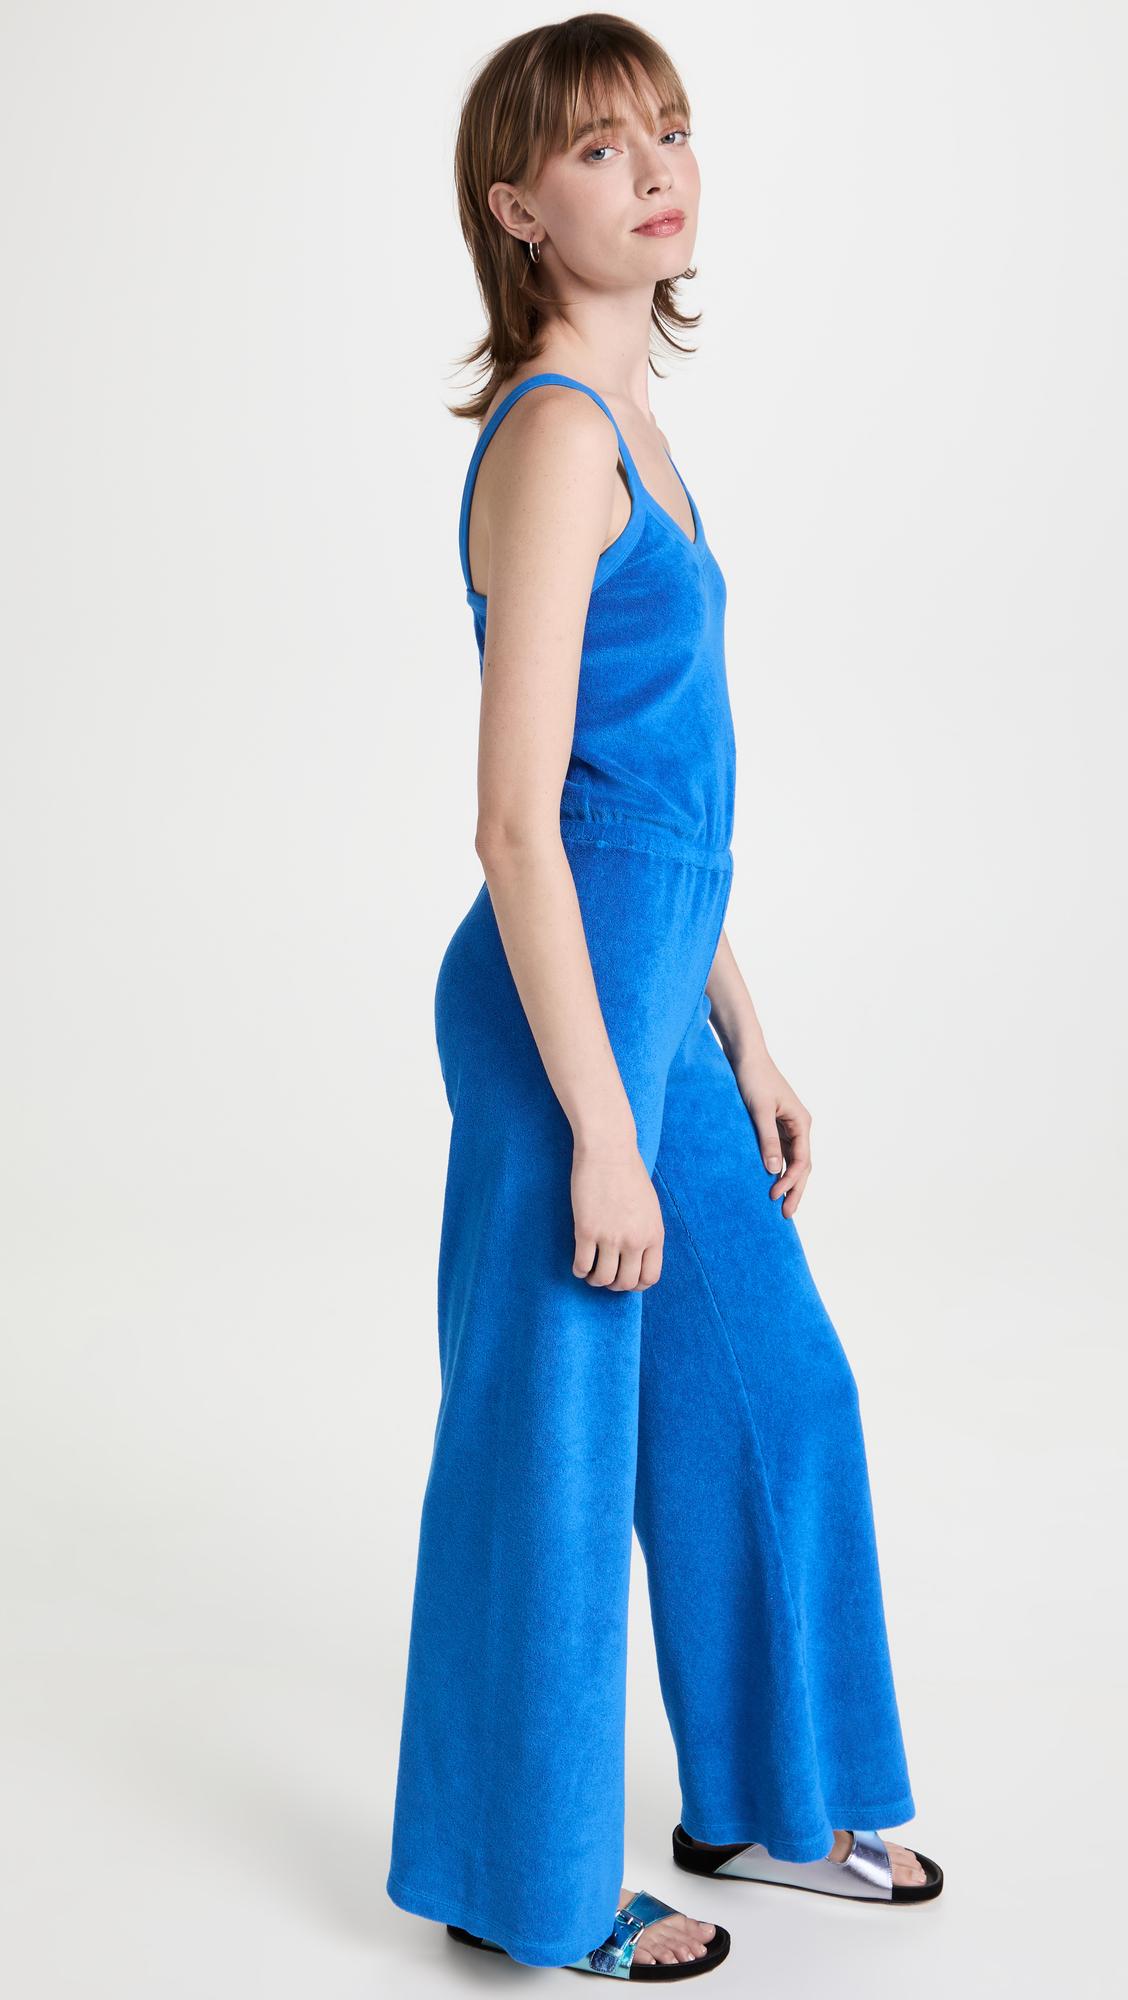 Zara | Pants & Jumpsuits | Zara Trafaluc Ribbed Knit Romper Jumper One  Piece Red Size L | Poshmark